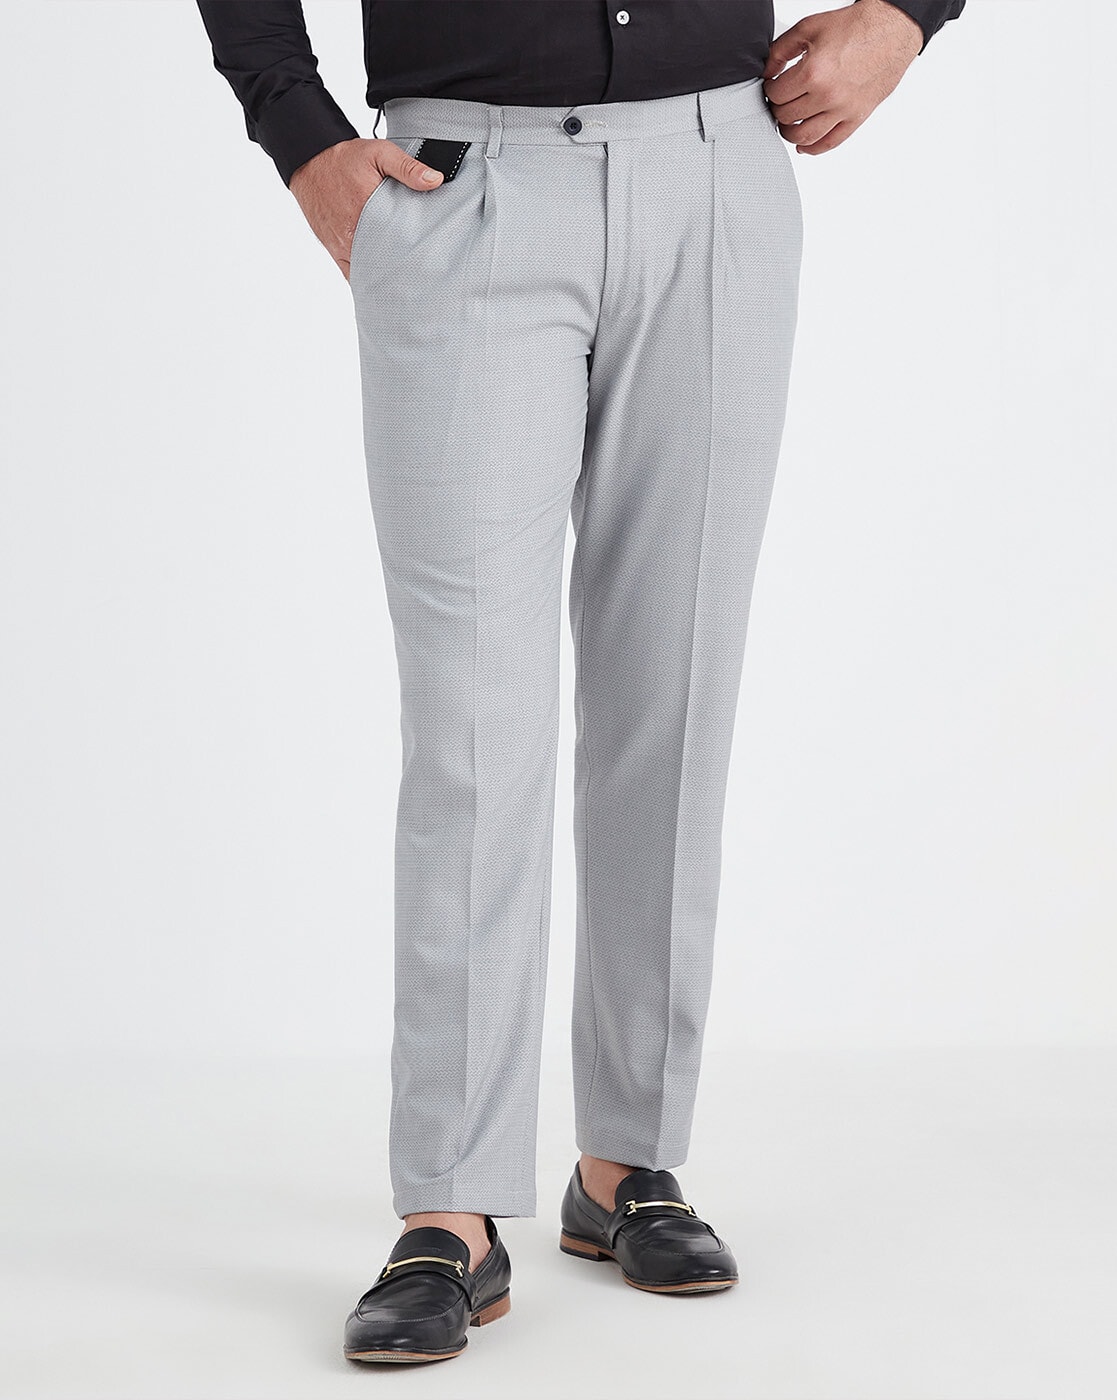 Men's Dress Pants Trousers Pleated Pants Suit Pants Pocket High Rise Solid  Color Comfort Formal Business